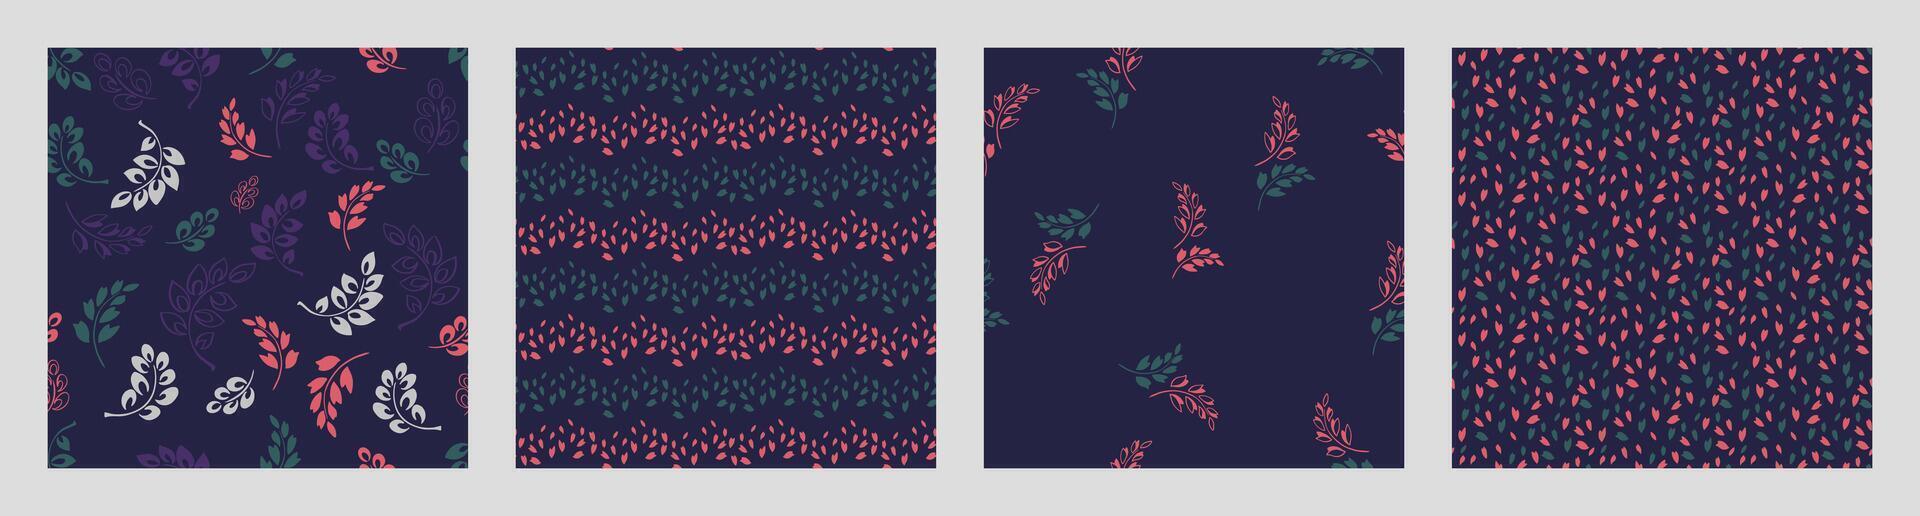 Collage von abstrakt Platz einstellen Hintergründe mit winzig kreativ abstrakt Blätter, skizzieren Polka Punkte, Rhombus, zufällig Tropfen, Texturen. Vektor Hand gezeichnet skizzieren dunkel einfach nahtlos Muster.